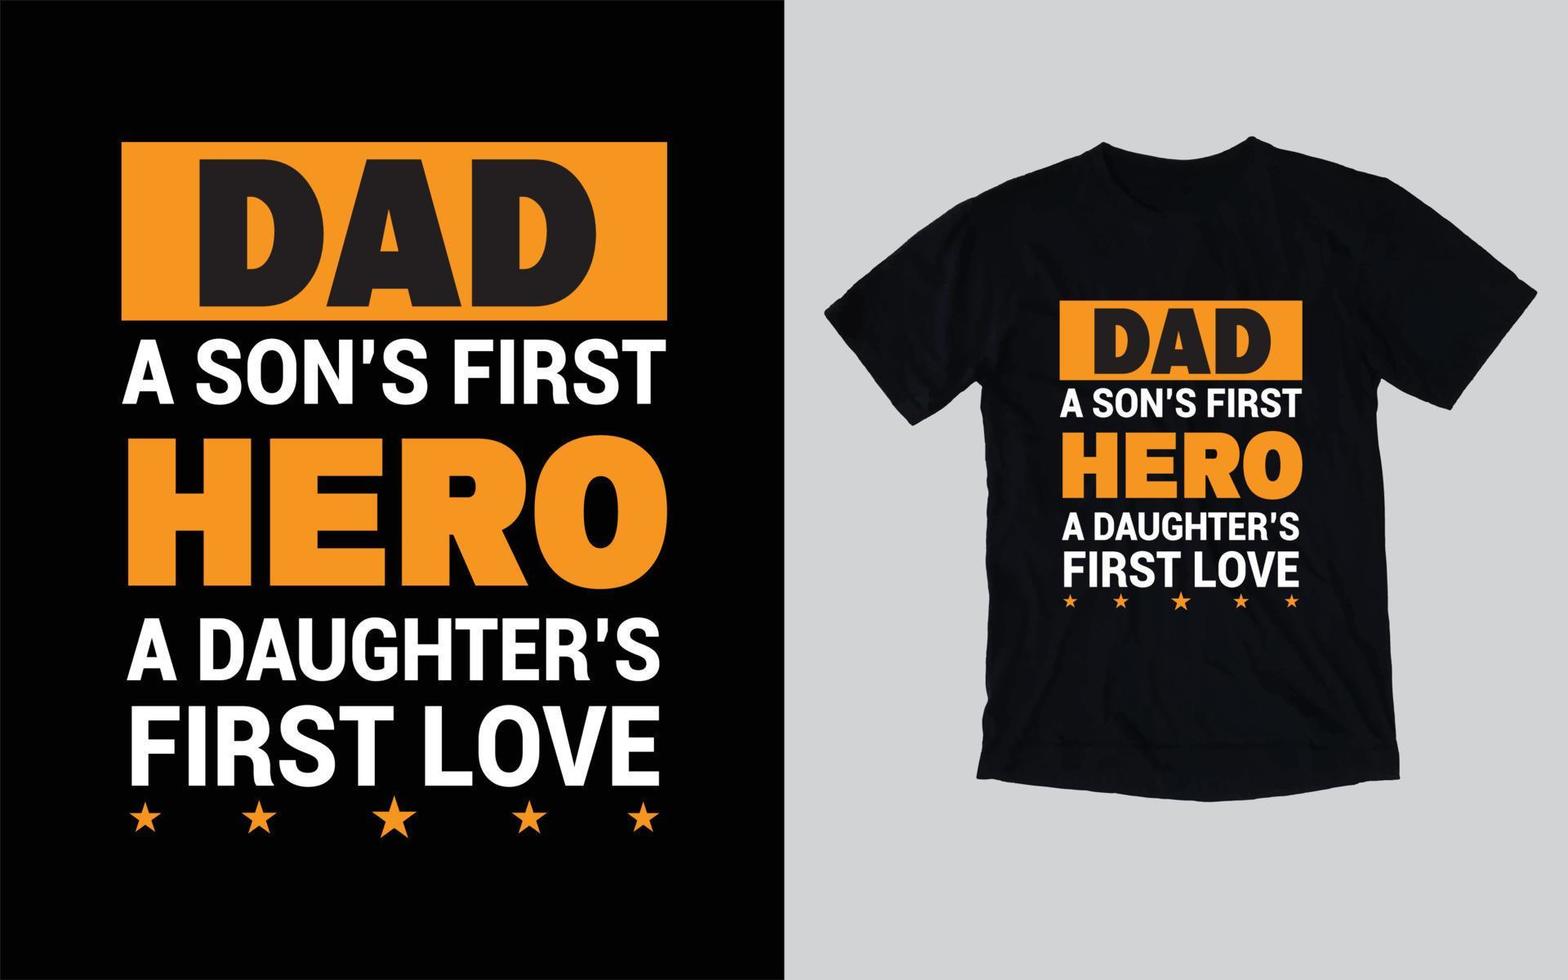 Vatertags-Typografie-T-Shirt-Design, glücklicher Vatertag vektor